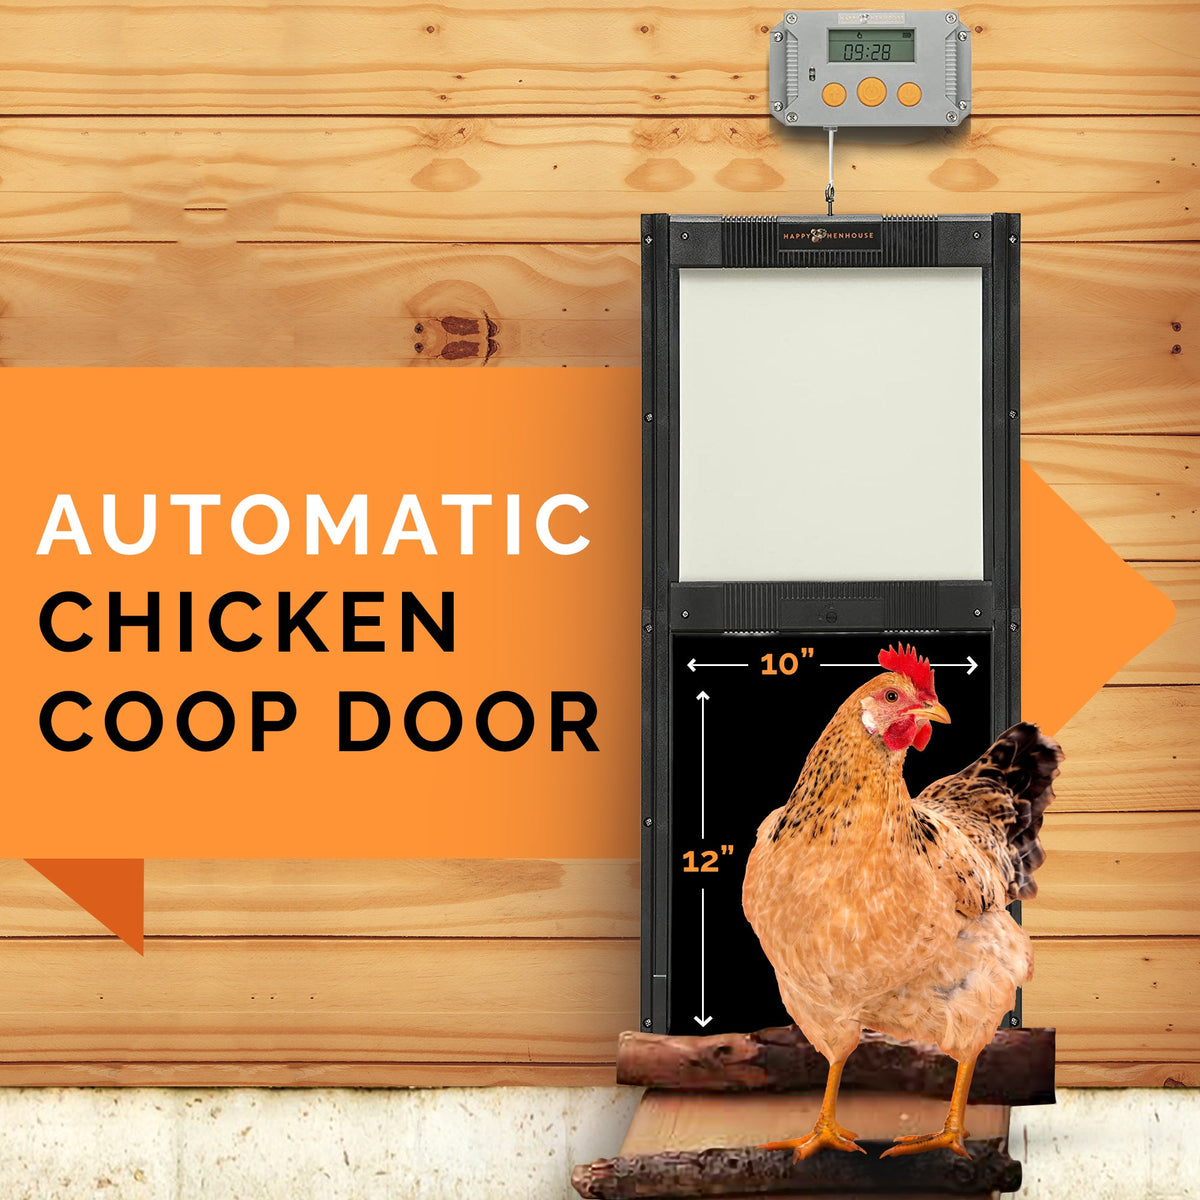 Automatic Chicken Coop Door Opener Kit - Timer and Light Sensor